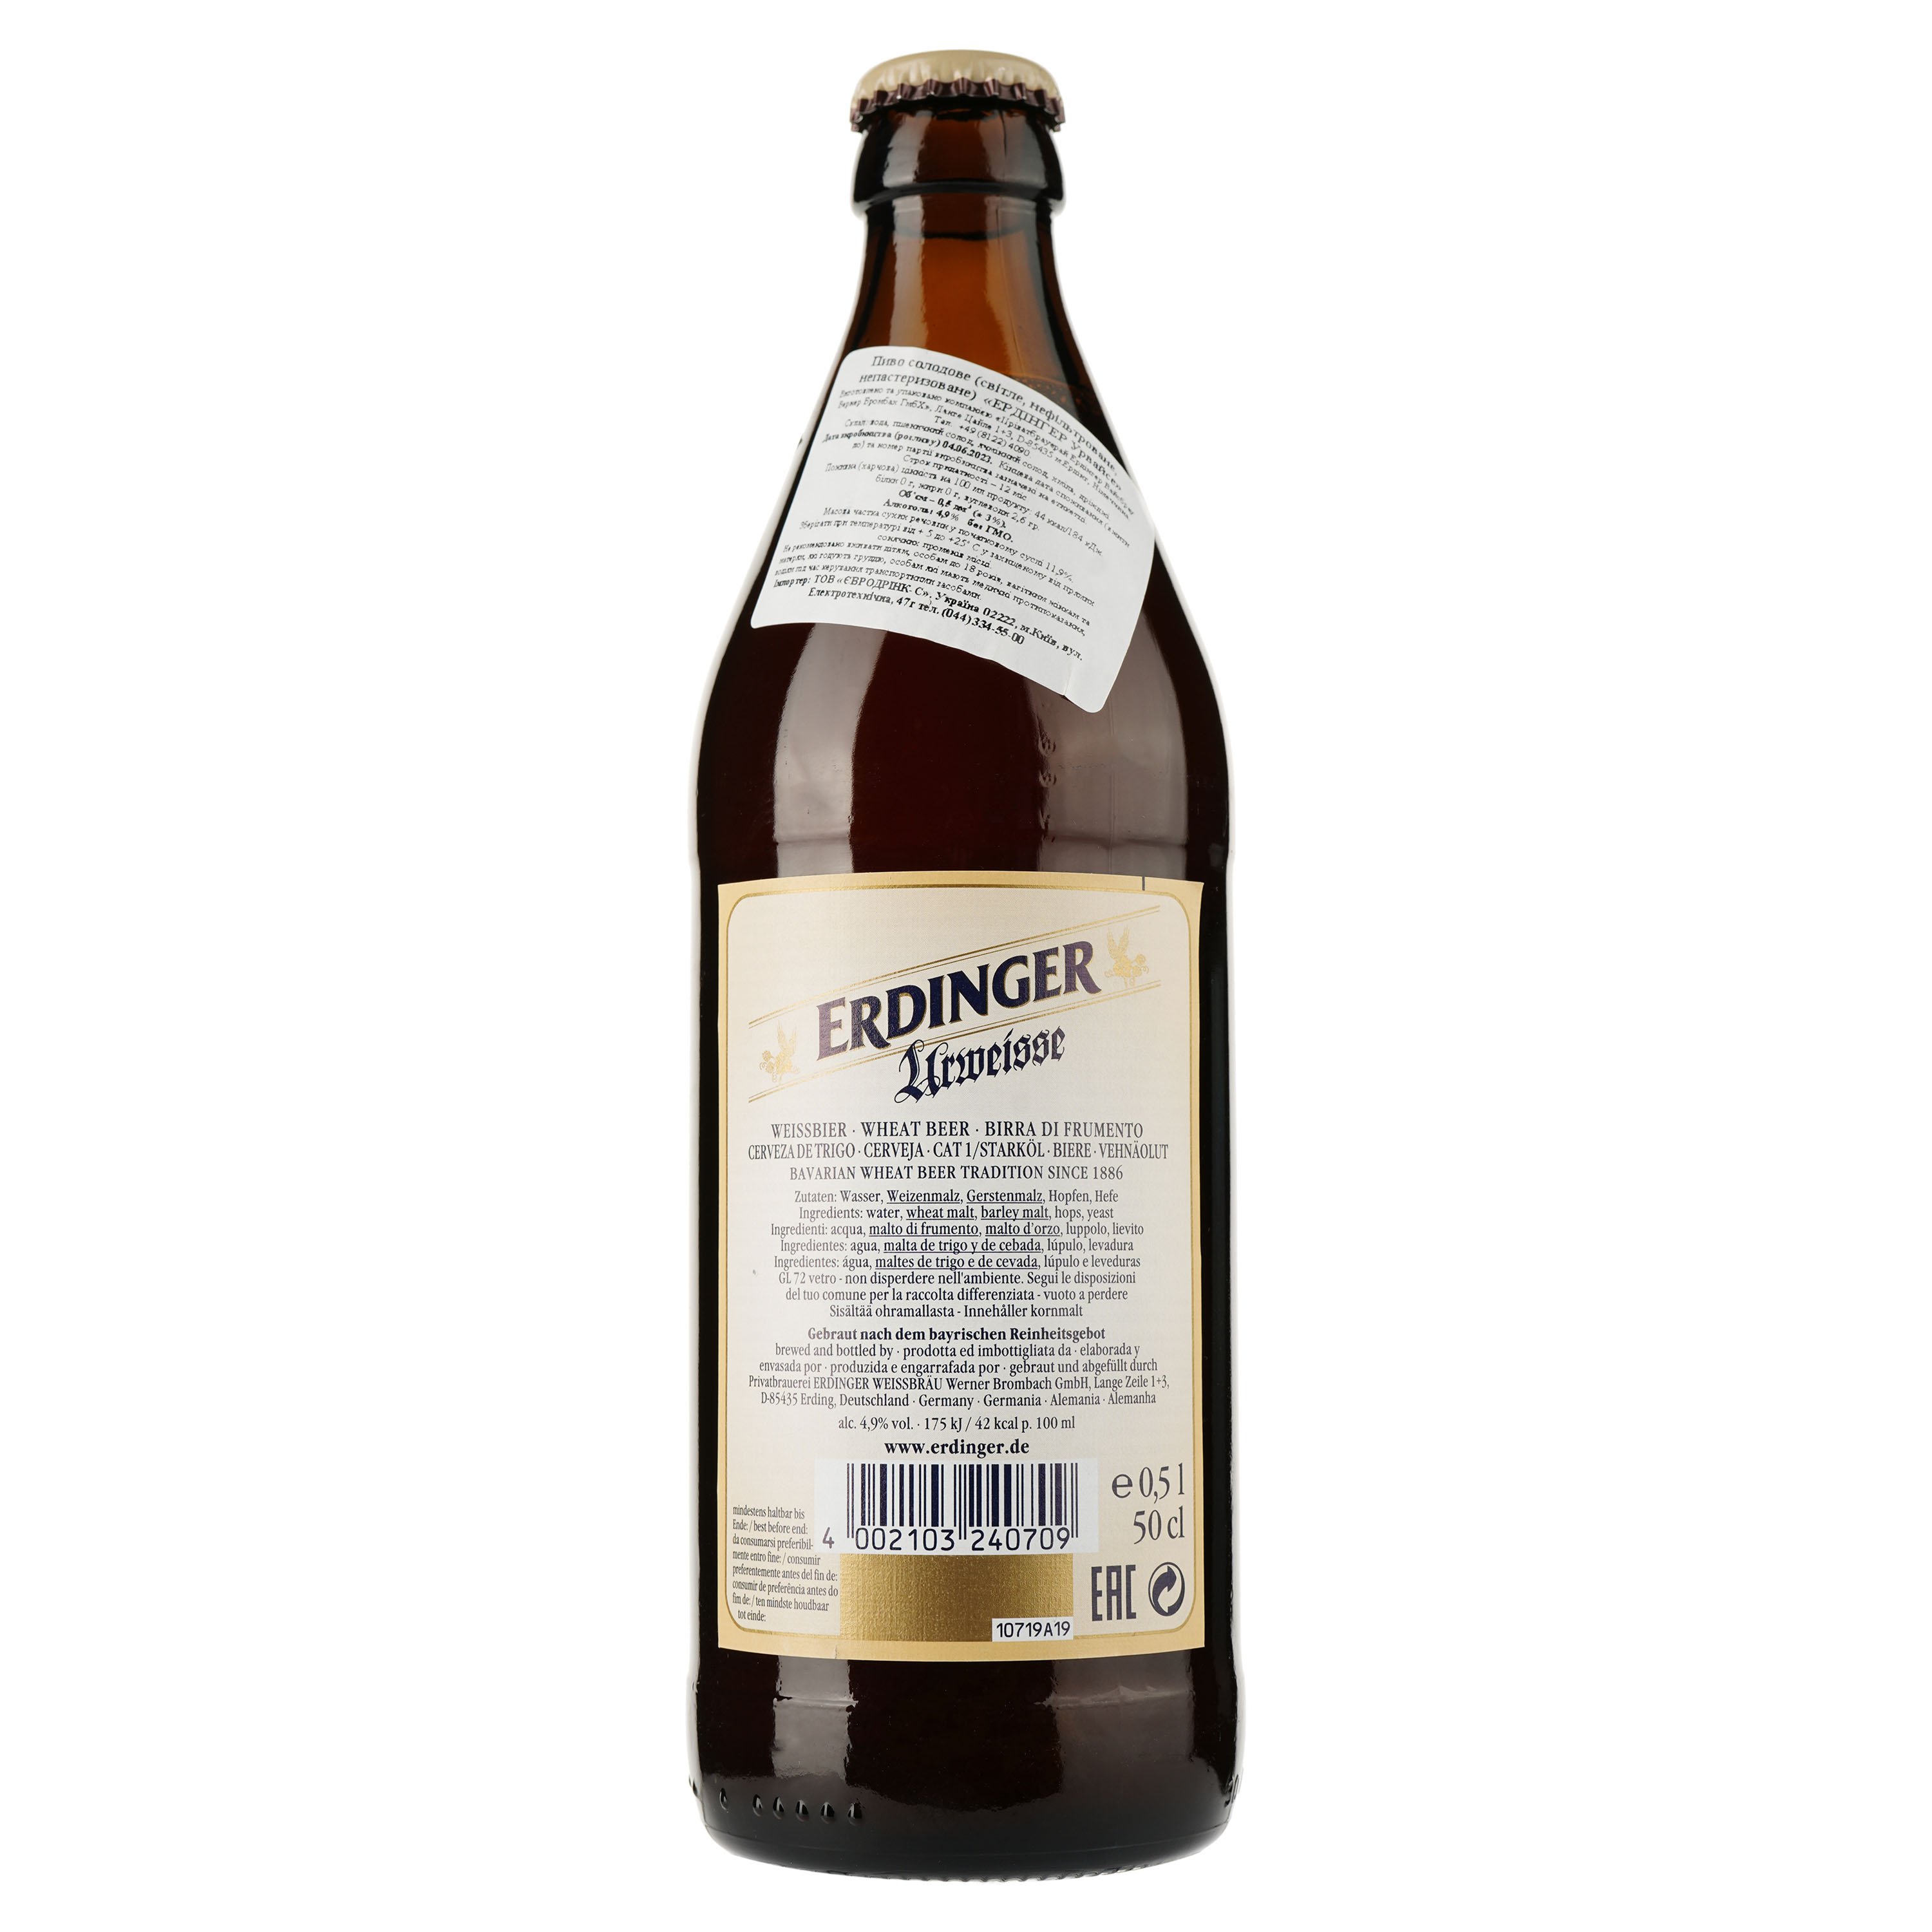 Пиво Erdinger Urweisse Пшеничное, светлое, 5,1%, 0,5л (761336) - фото 2